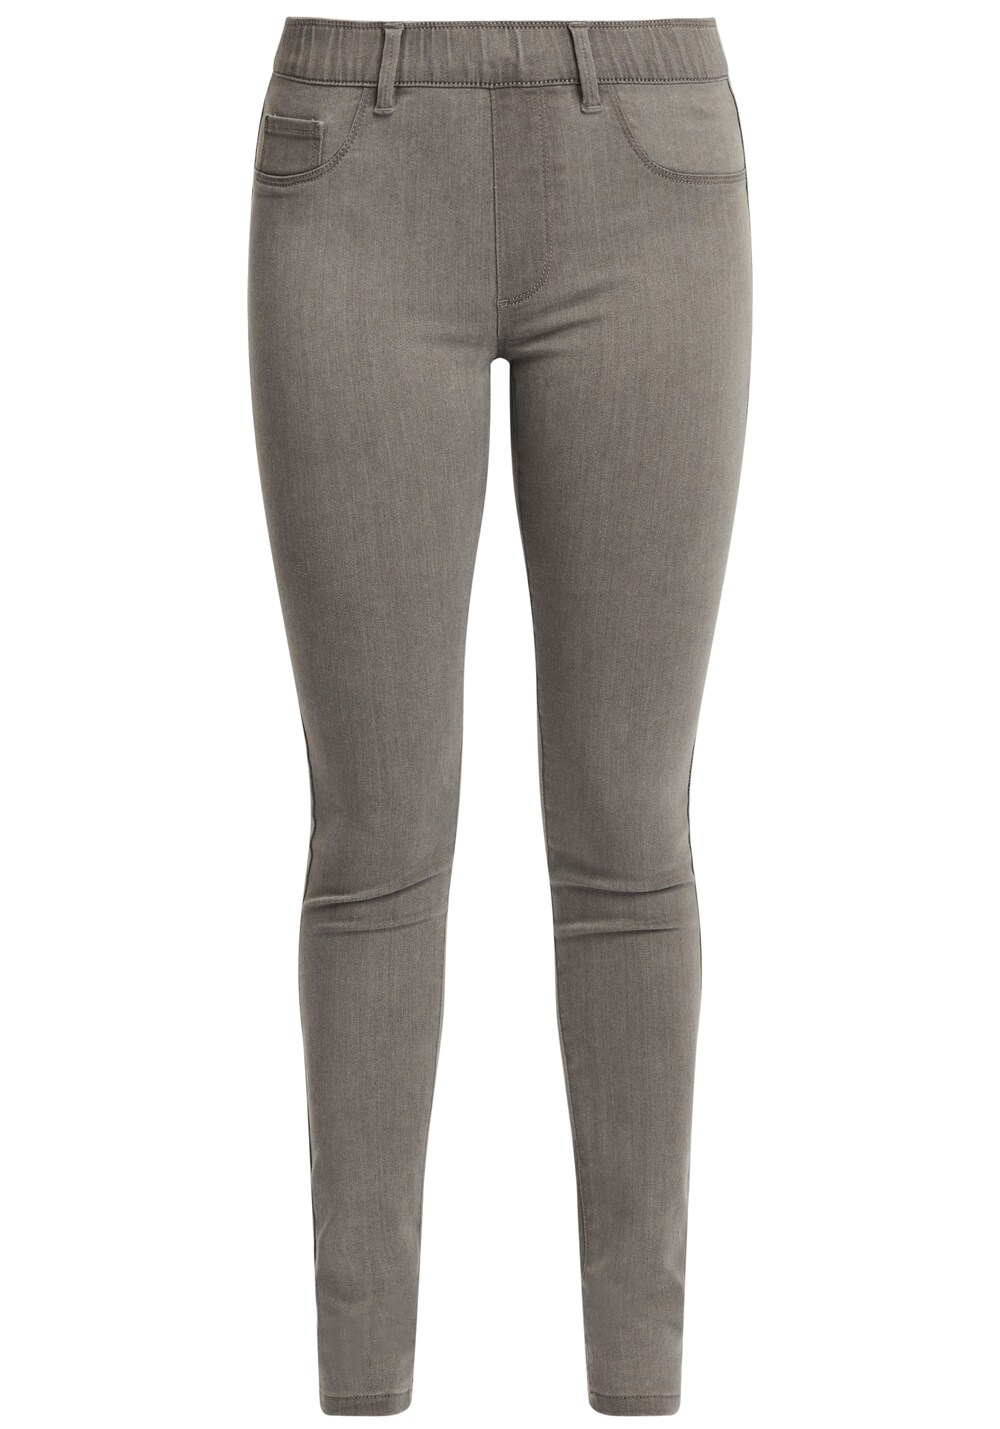 Узкие джинсы Oxmo Gesine, серый/светло-серый/пестрый серый фотографии